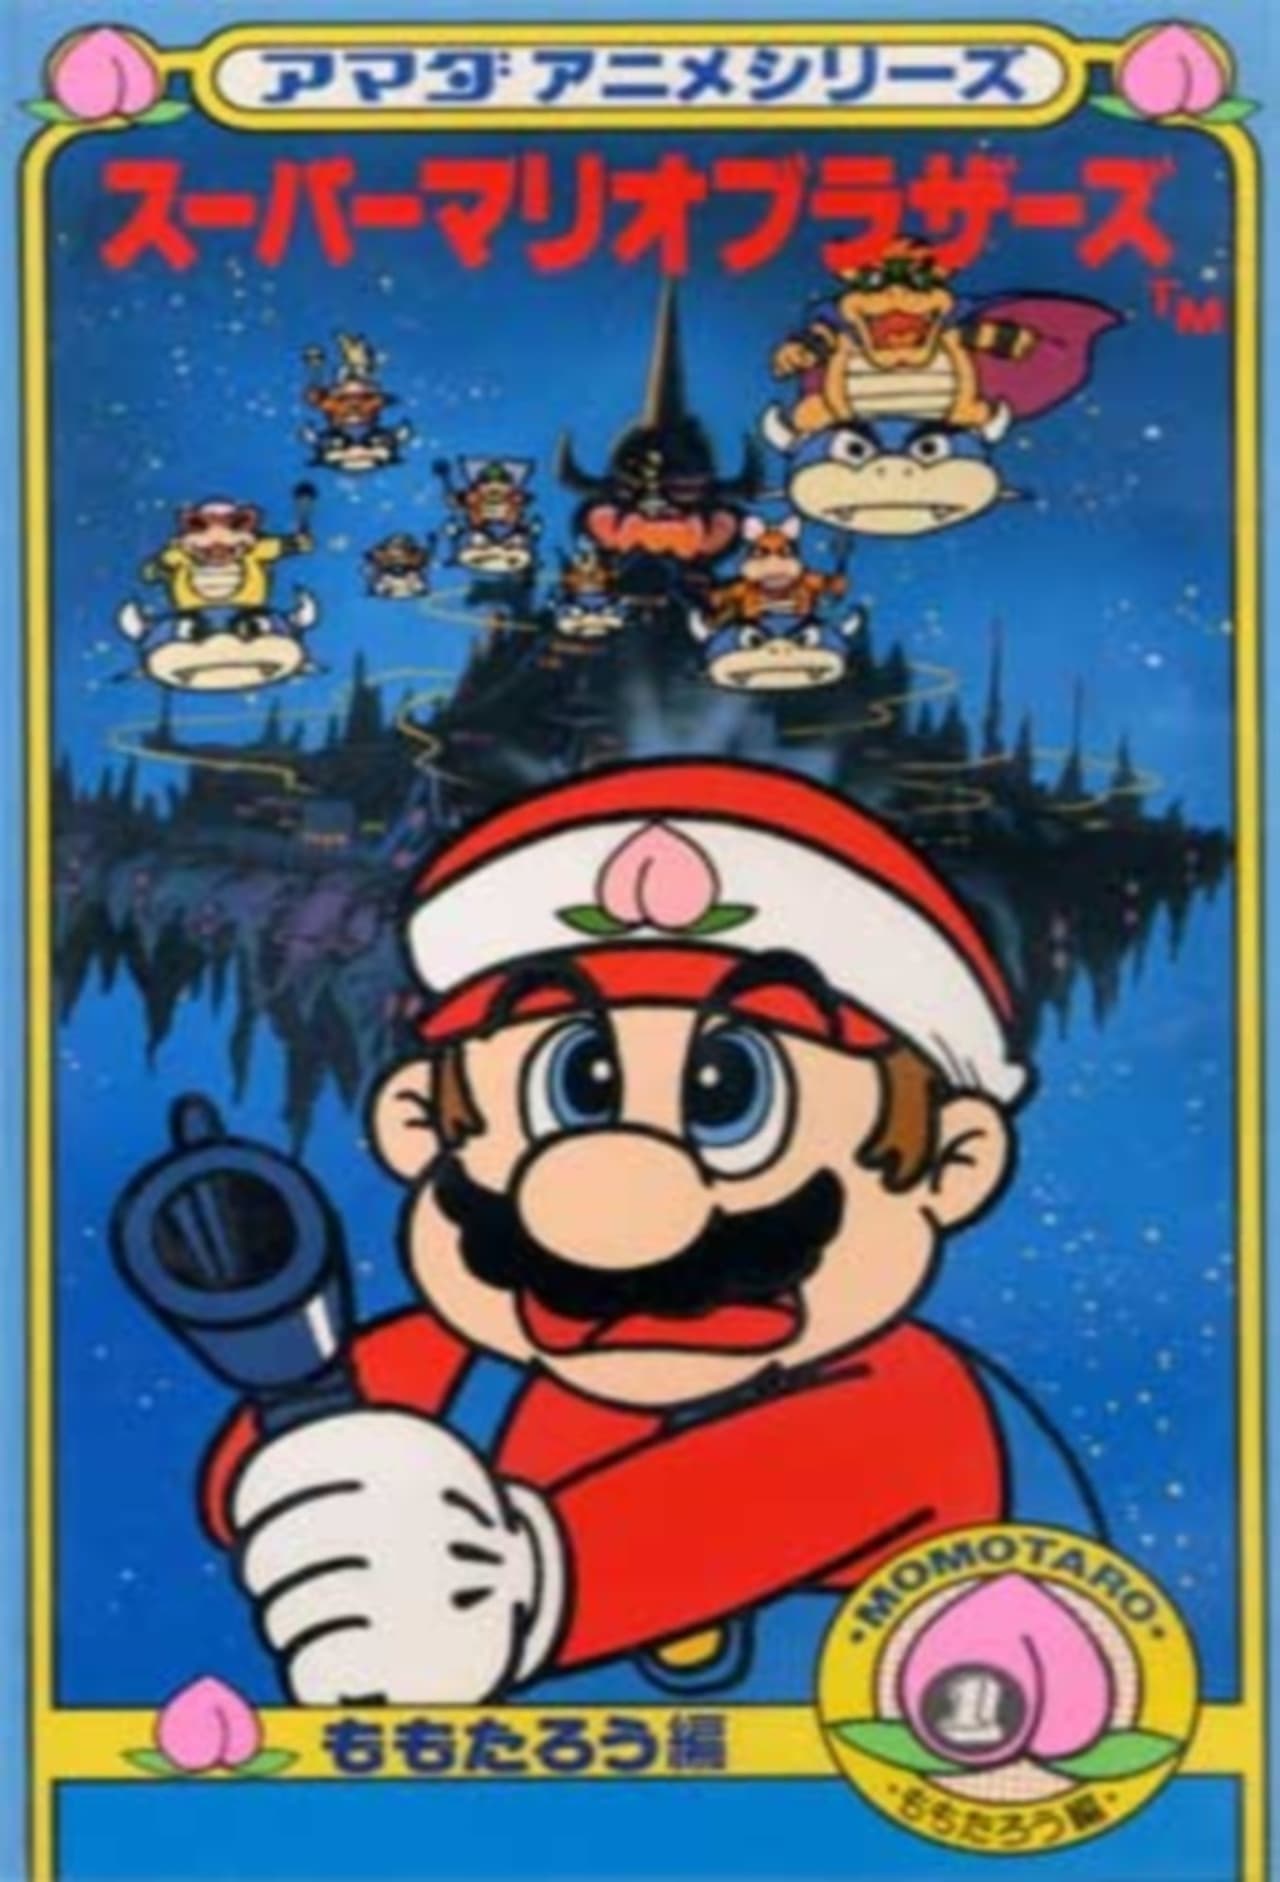 Amada Anime Series: Super Mario (1989)